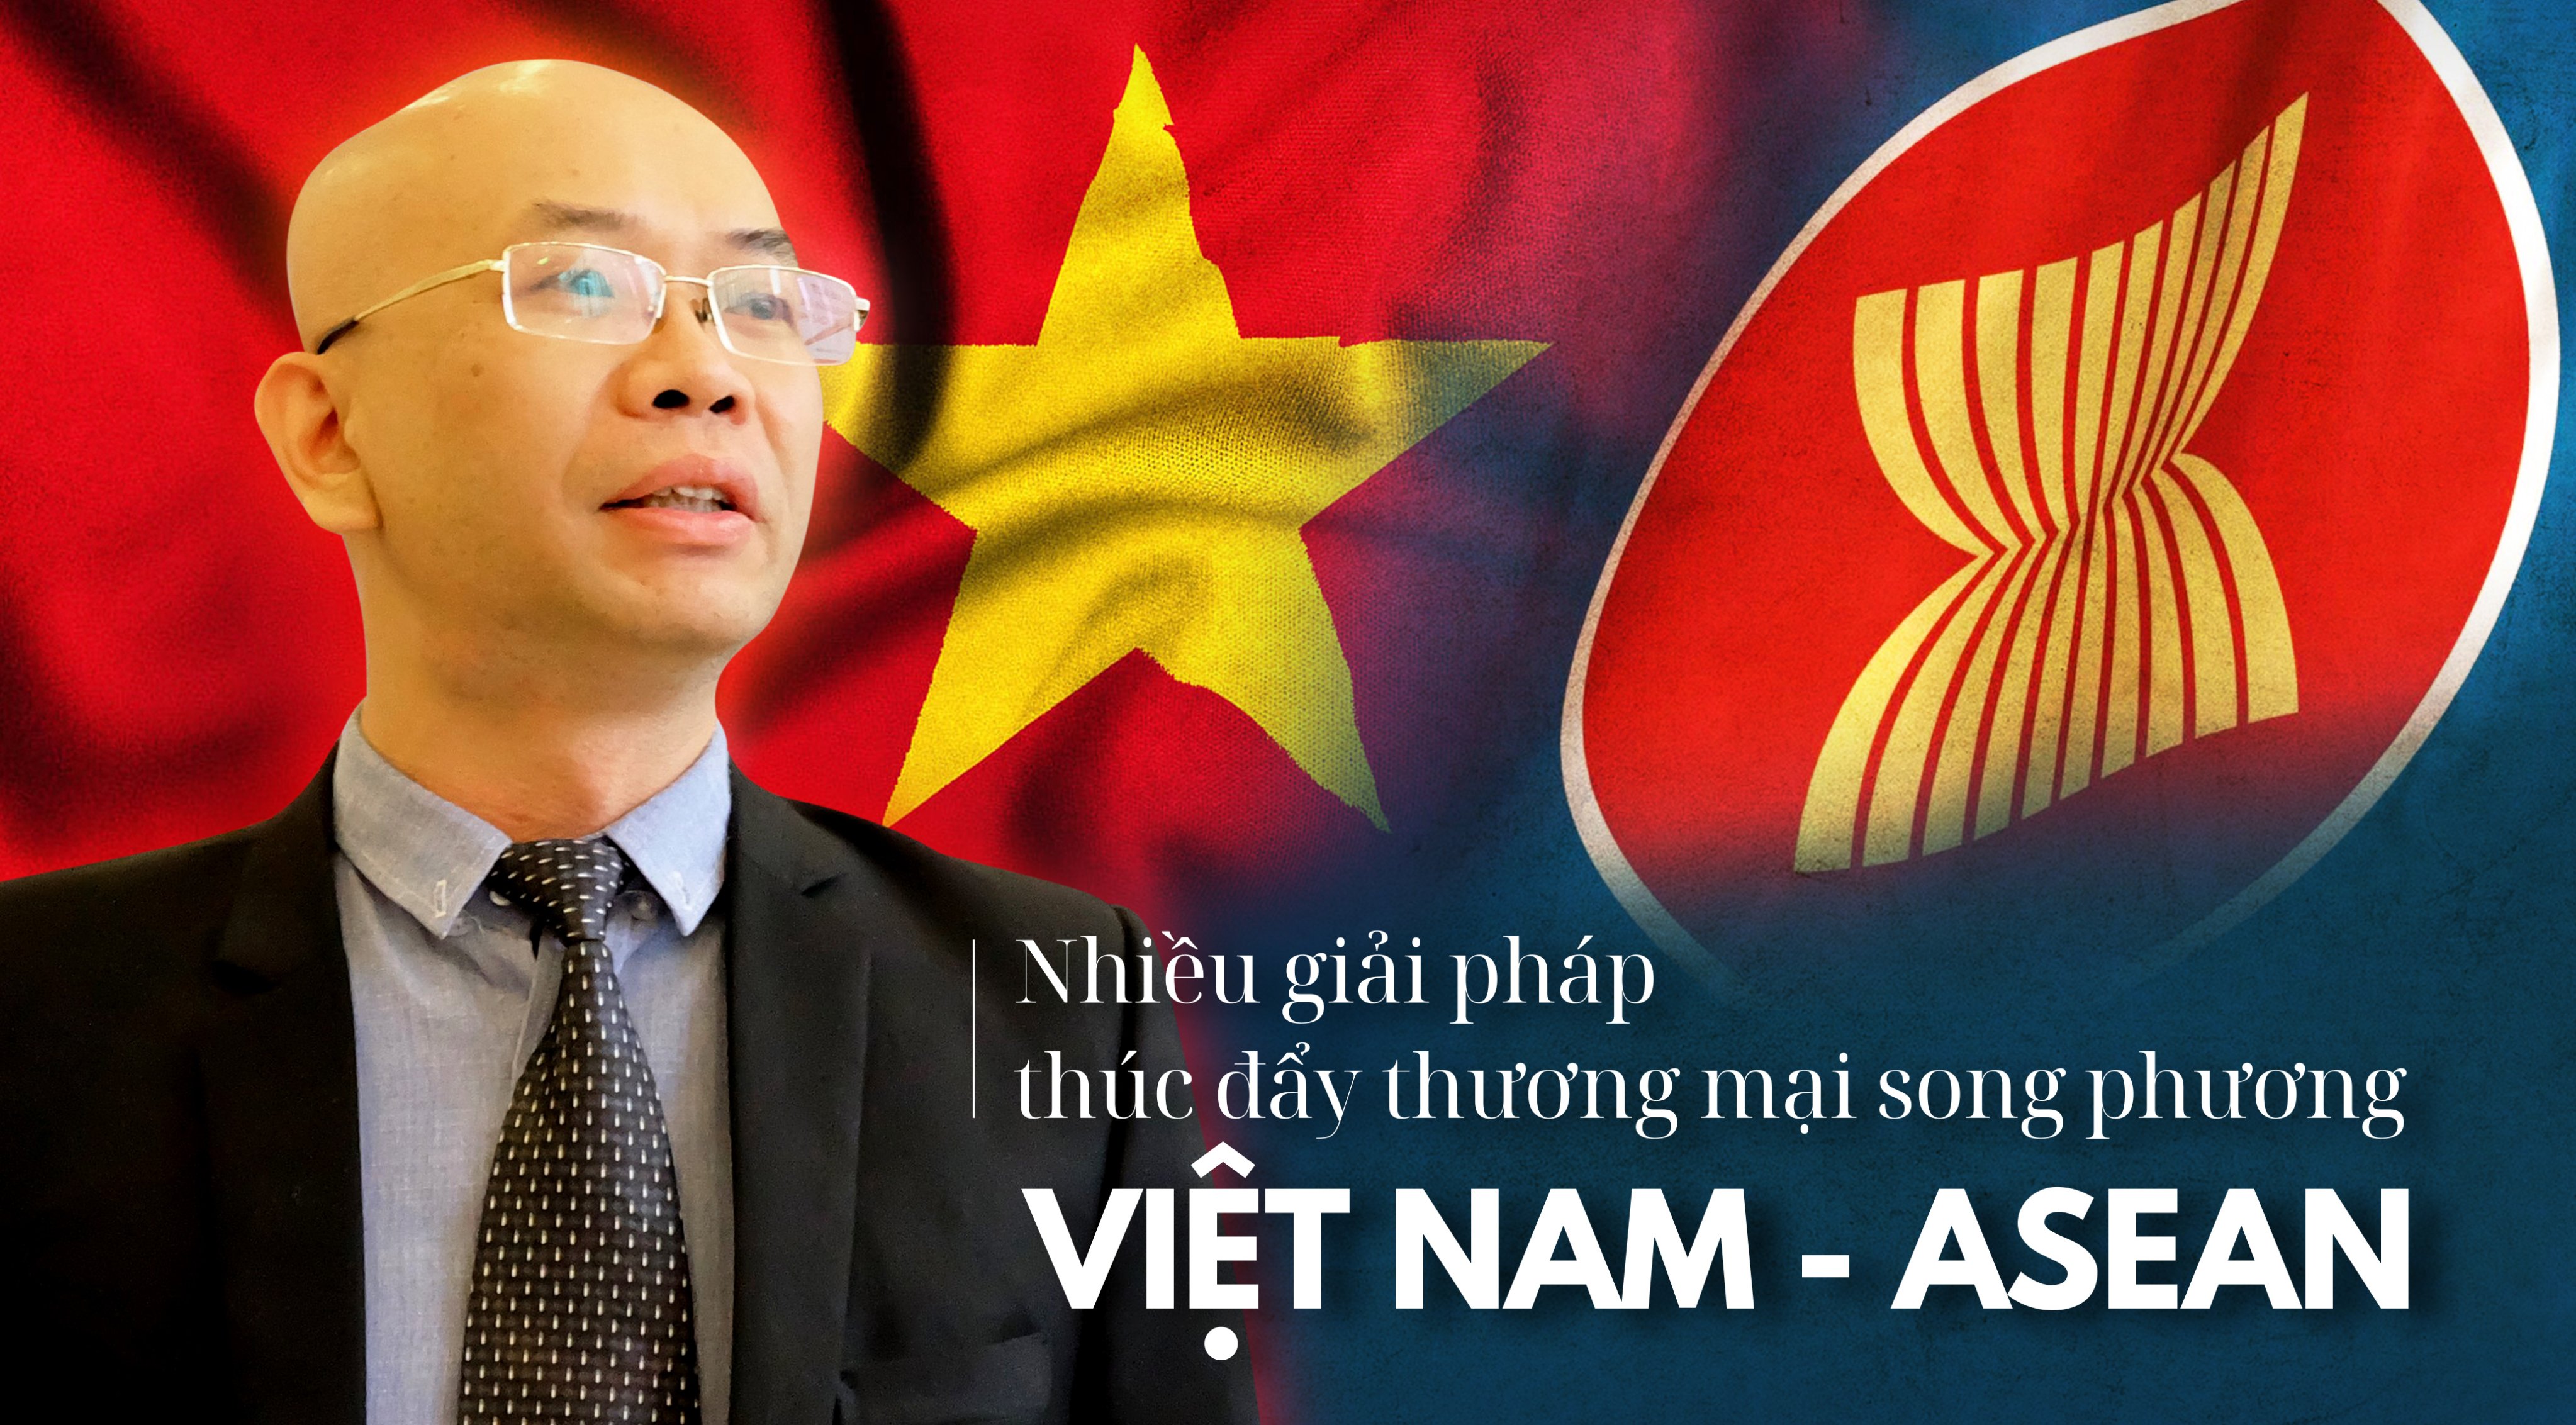 Thị trường ASEAN rộng lớn, cơ hội nào cho doanh nghiệp Việt Nam